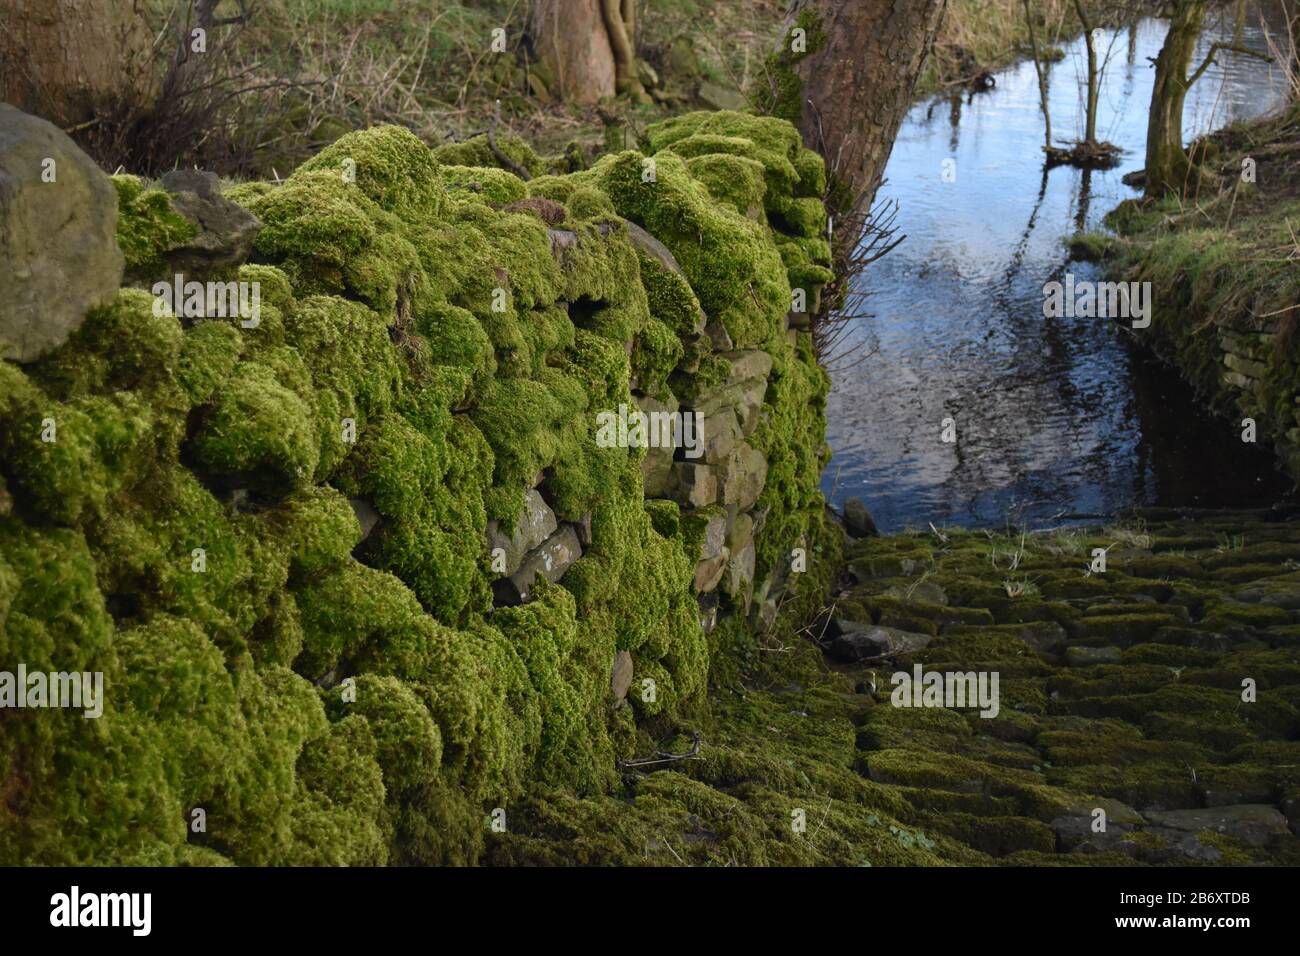 Mur en pierre recouvert de mousse verte Banque D'Images